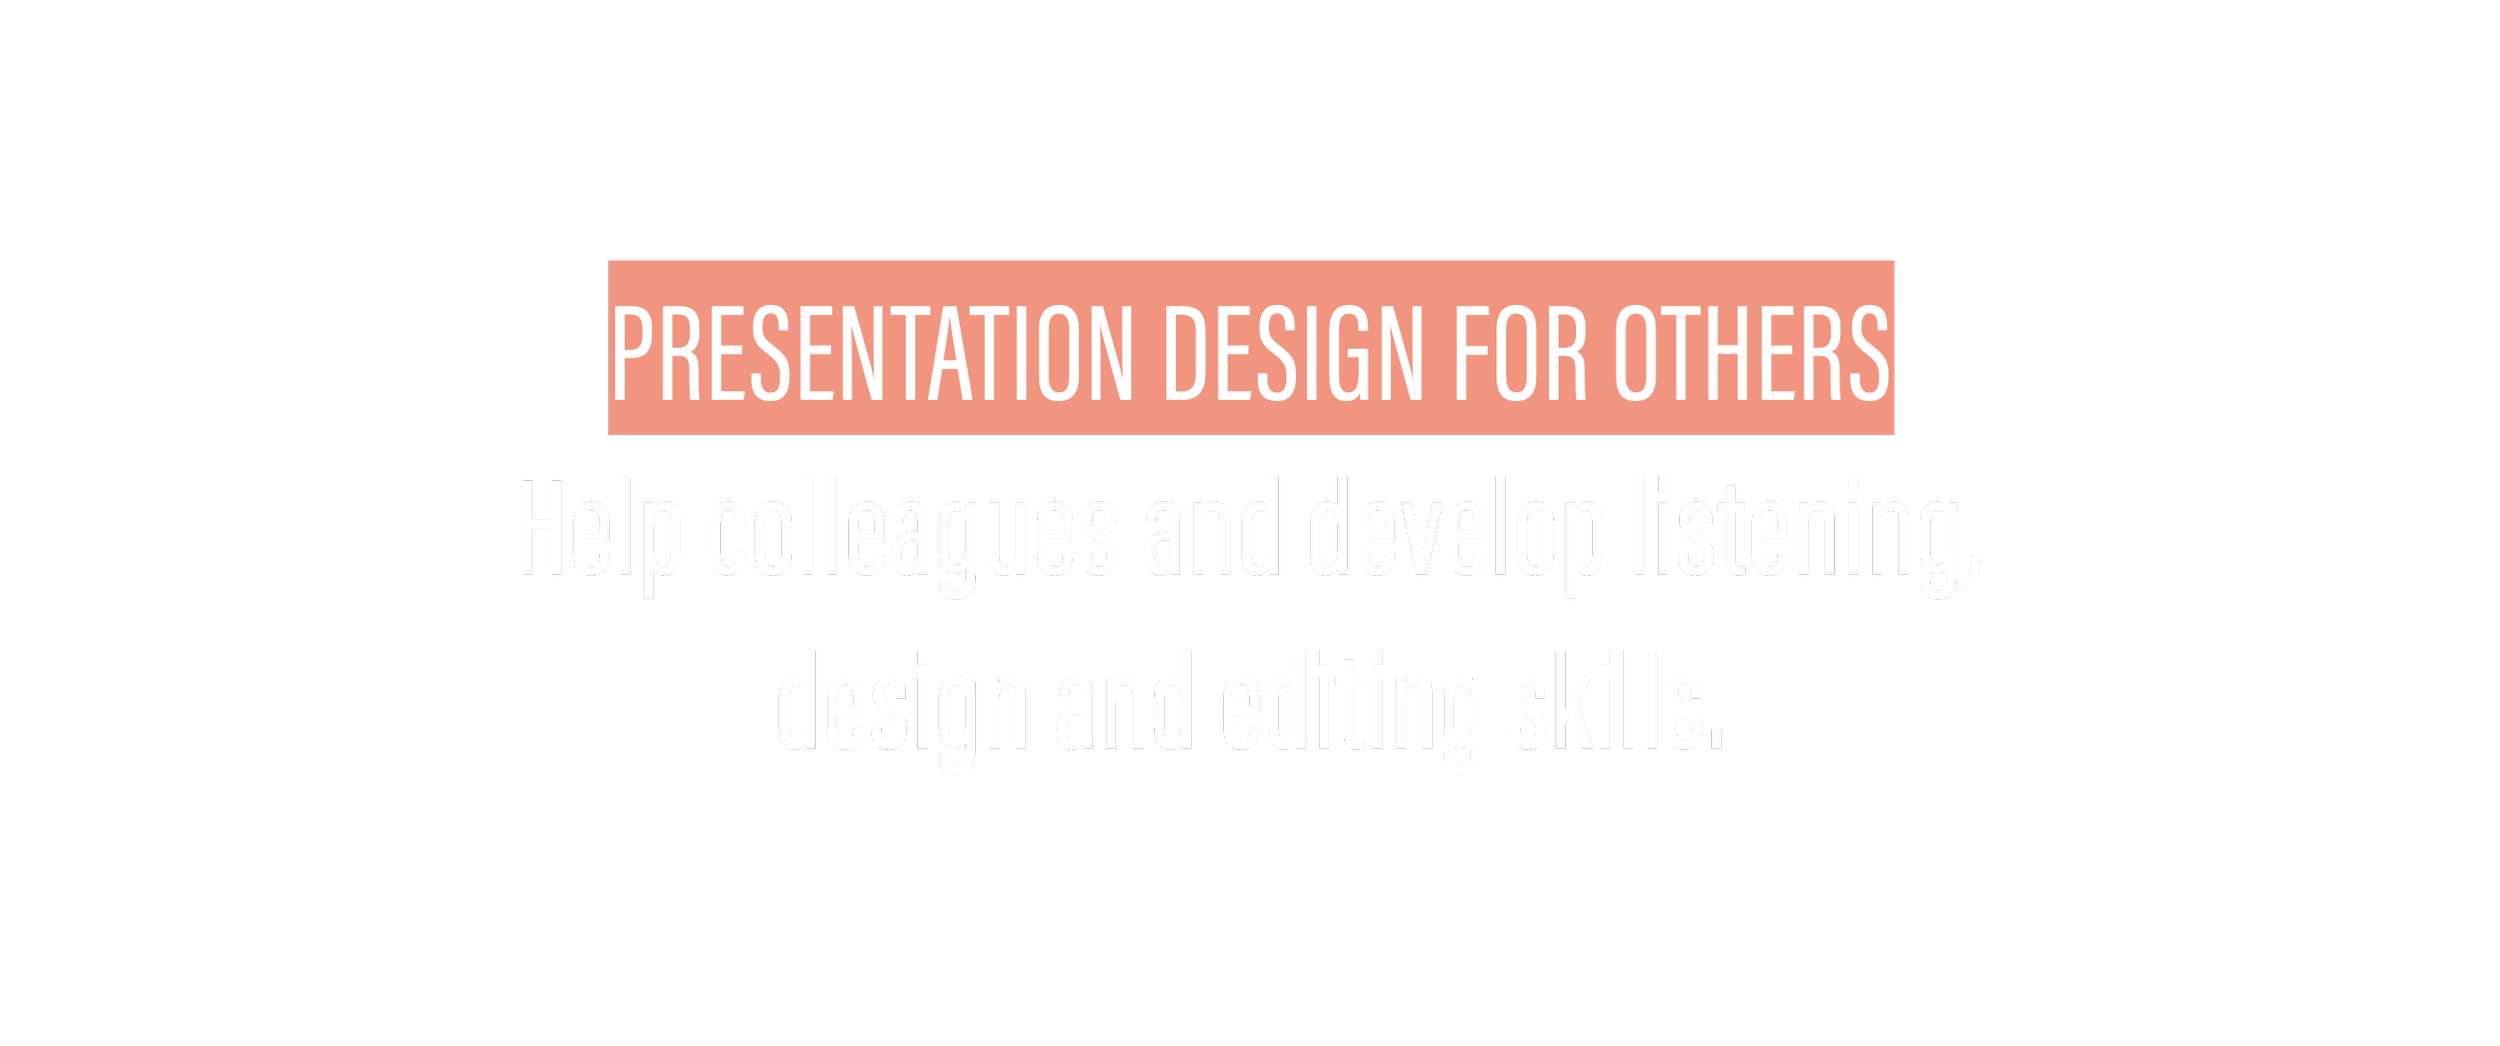 Presentation Design for Others.004.png